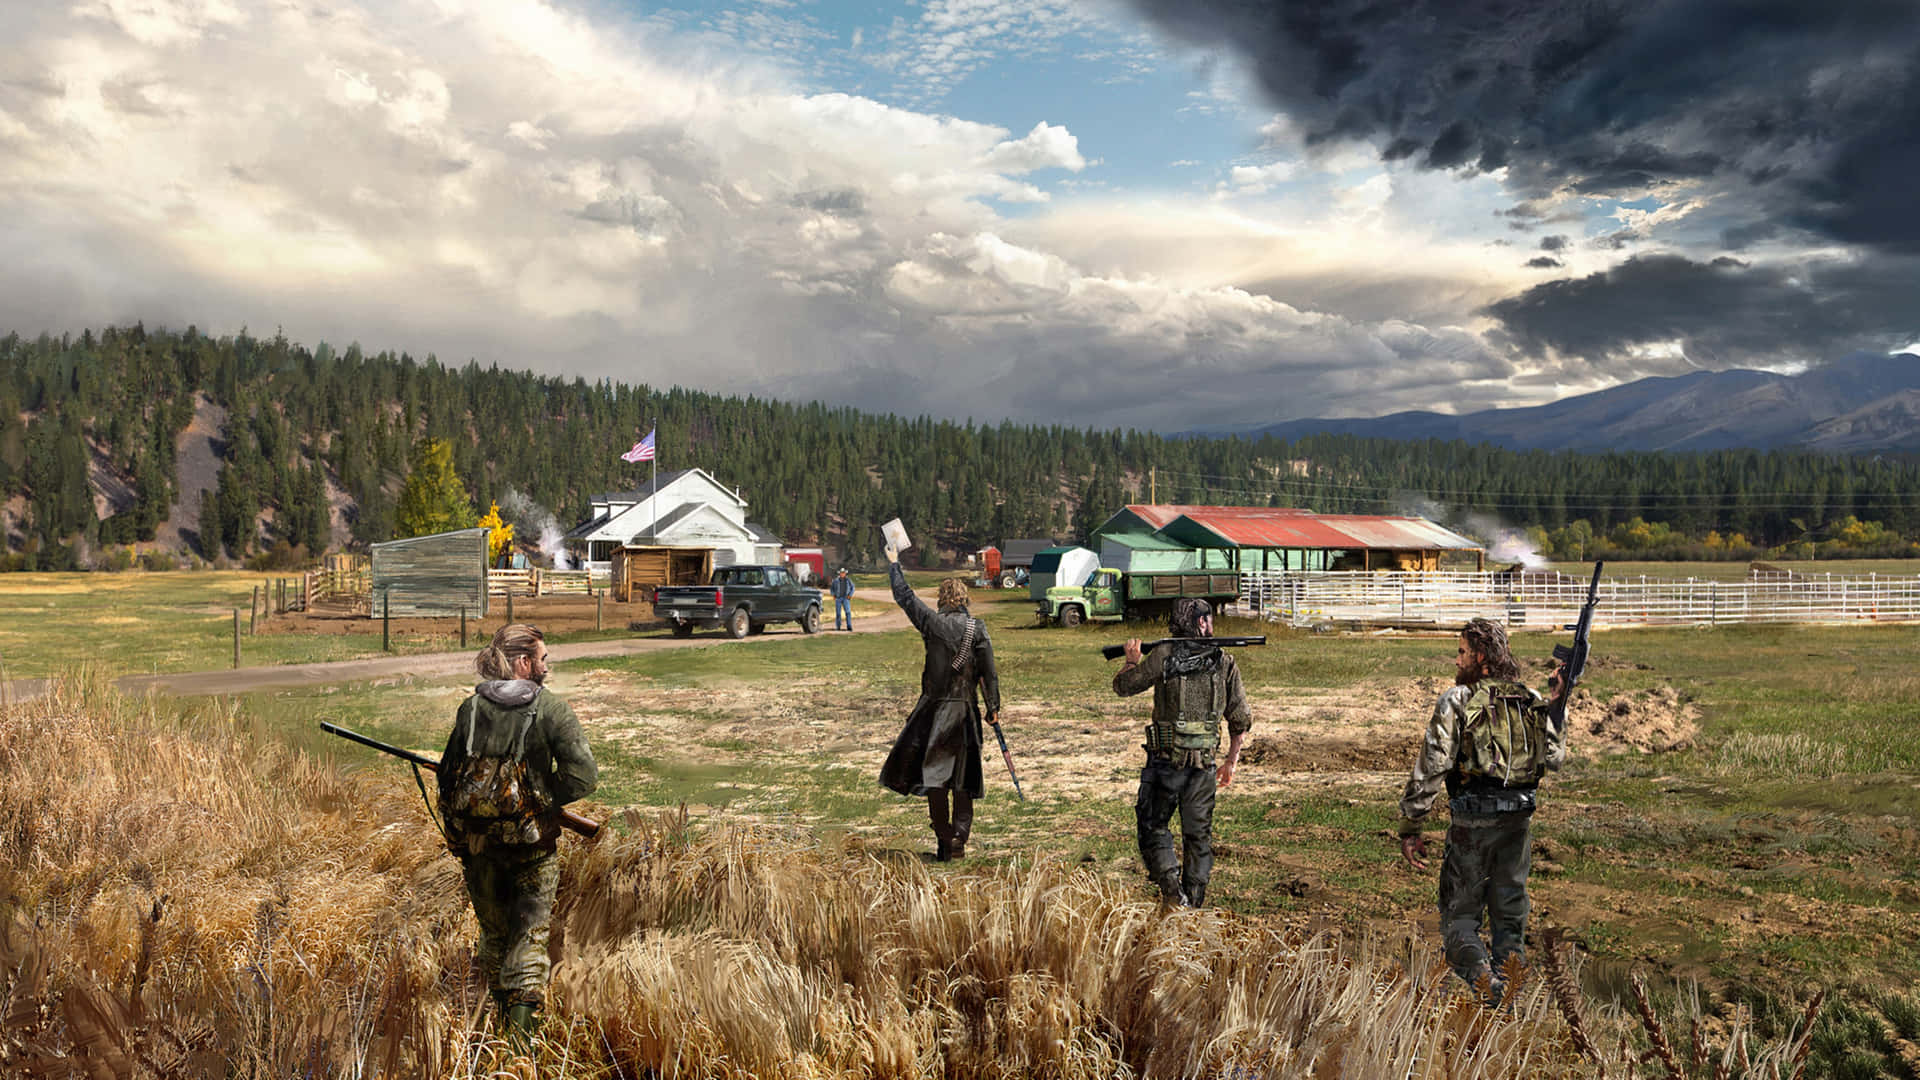 Vivile Incredibili Immagini Di Far Cry 5 In 4k Ultra Hd. Sfondo